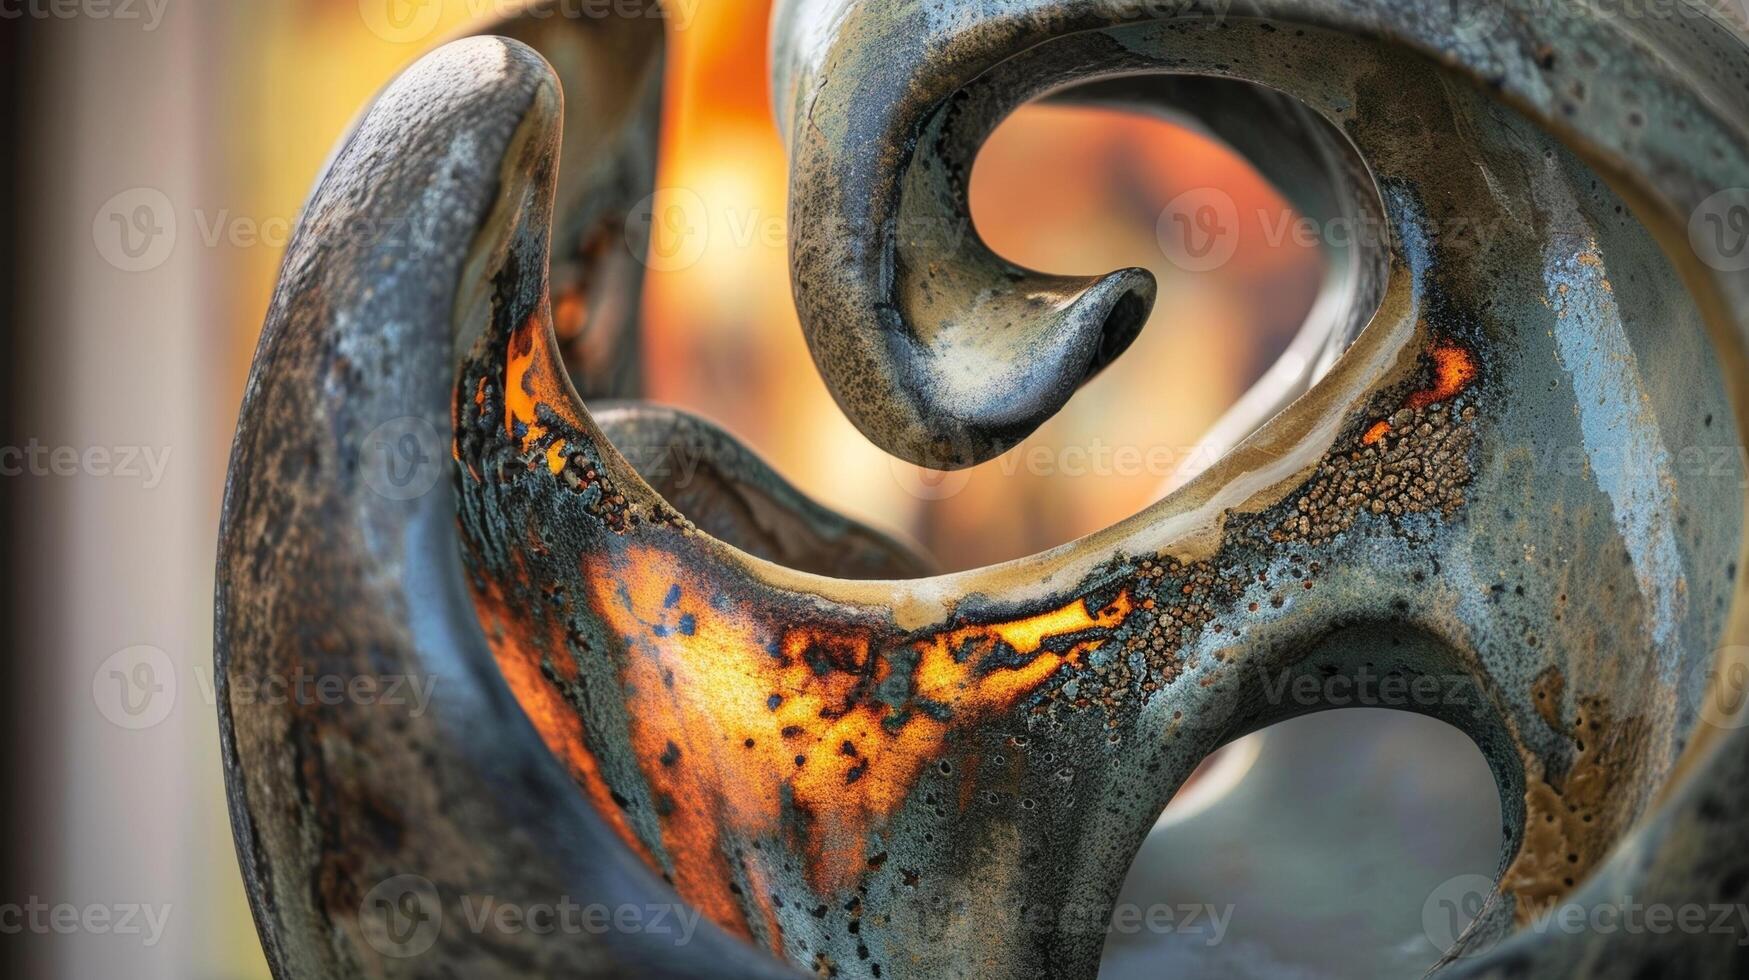 de använda sig av av raku bränning Metod till Lägg till en dramatisk stil till en massiv keramisk skulptur. foto